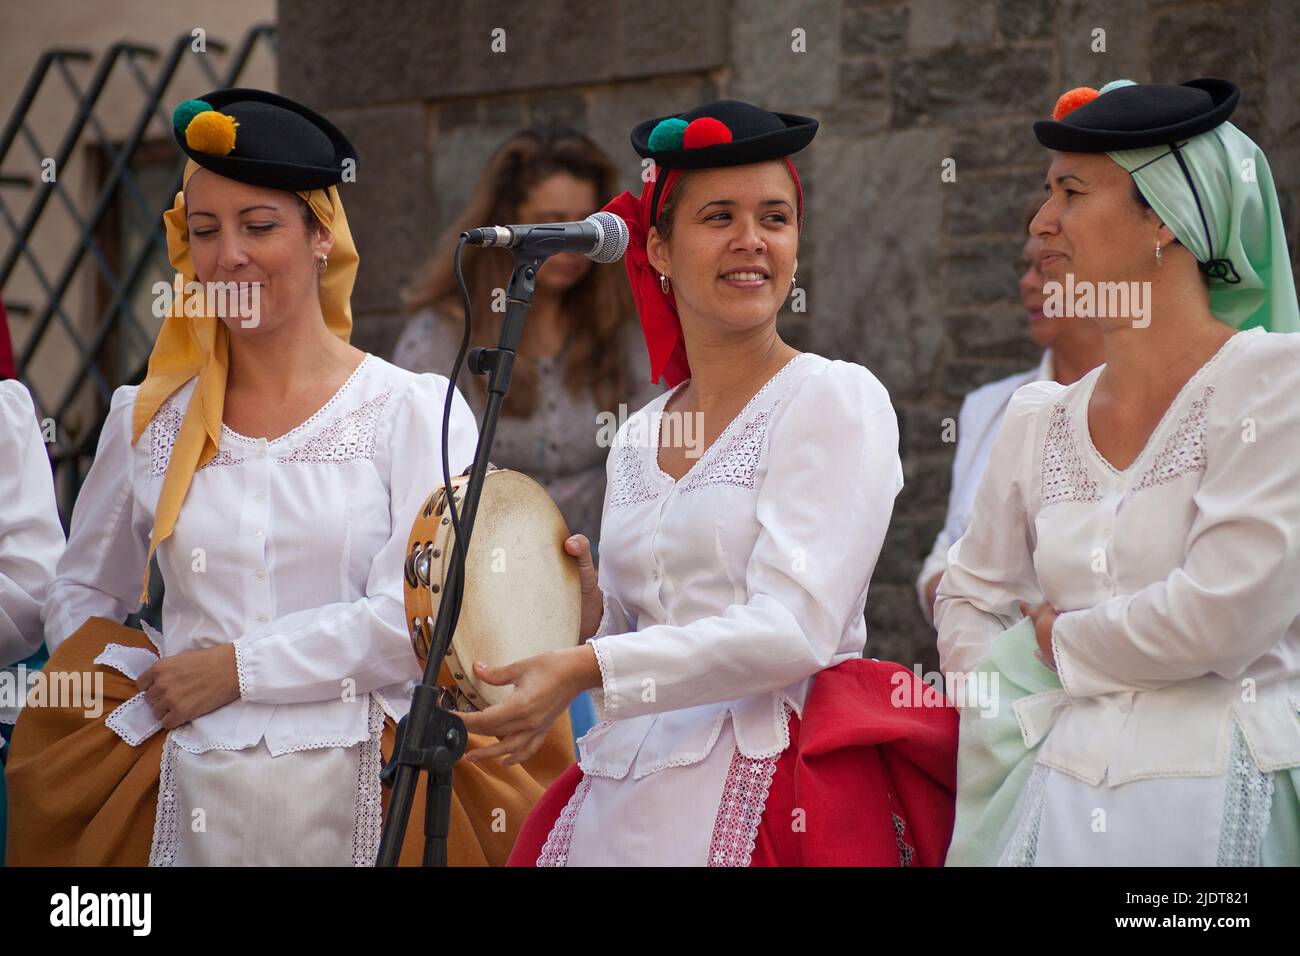 Espectáculo folklórico en Pueblo Canario, músicos con trajes tradicionales en Parque Doramas, Las Palmas, Gran Canaria, Islas Canarias, España, Europa Foto de stock